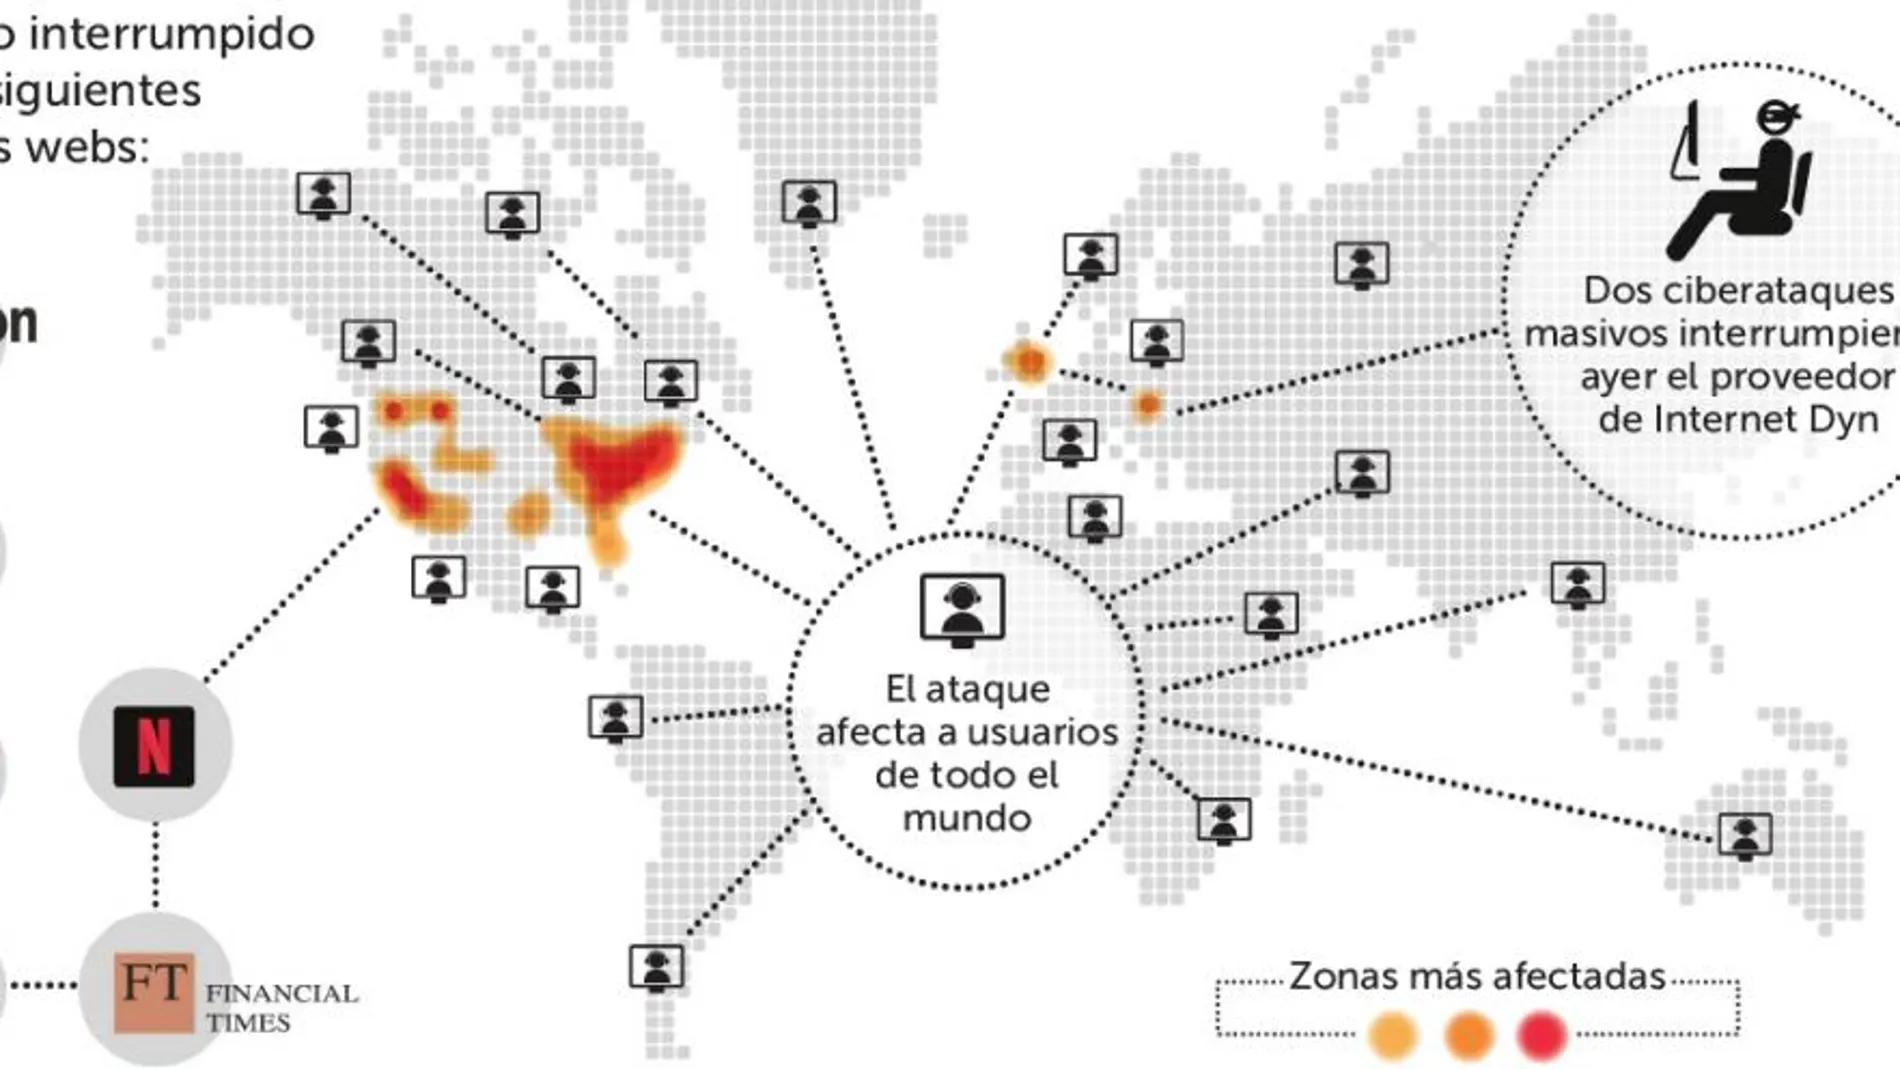 En un ataque DDoS, los piratas informáticos intentan saturar las respuesta de servidores con una oleada de demandas de acceso falsas